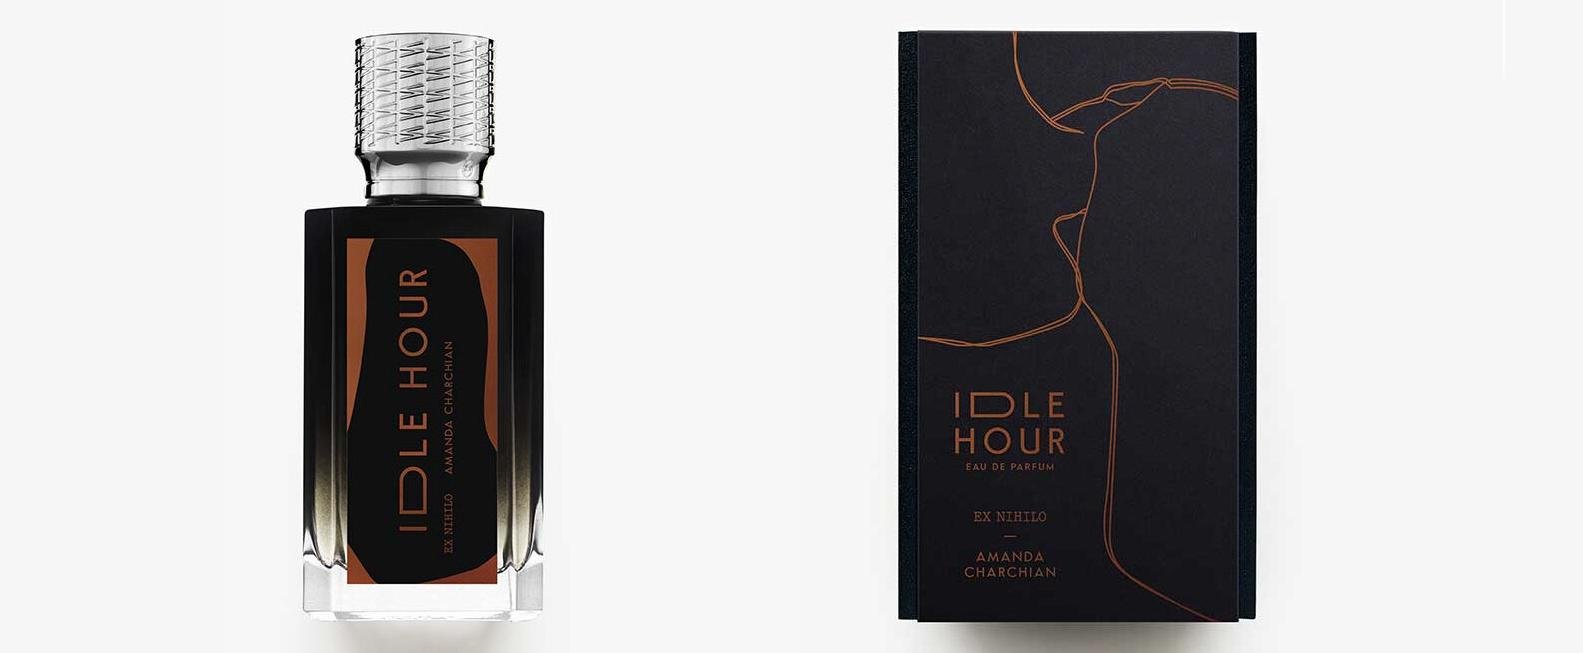 „Idle Hour“ - neues Parfum von Ex Nihilo in Zusammenarbeit mit Amanda Charchian